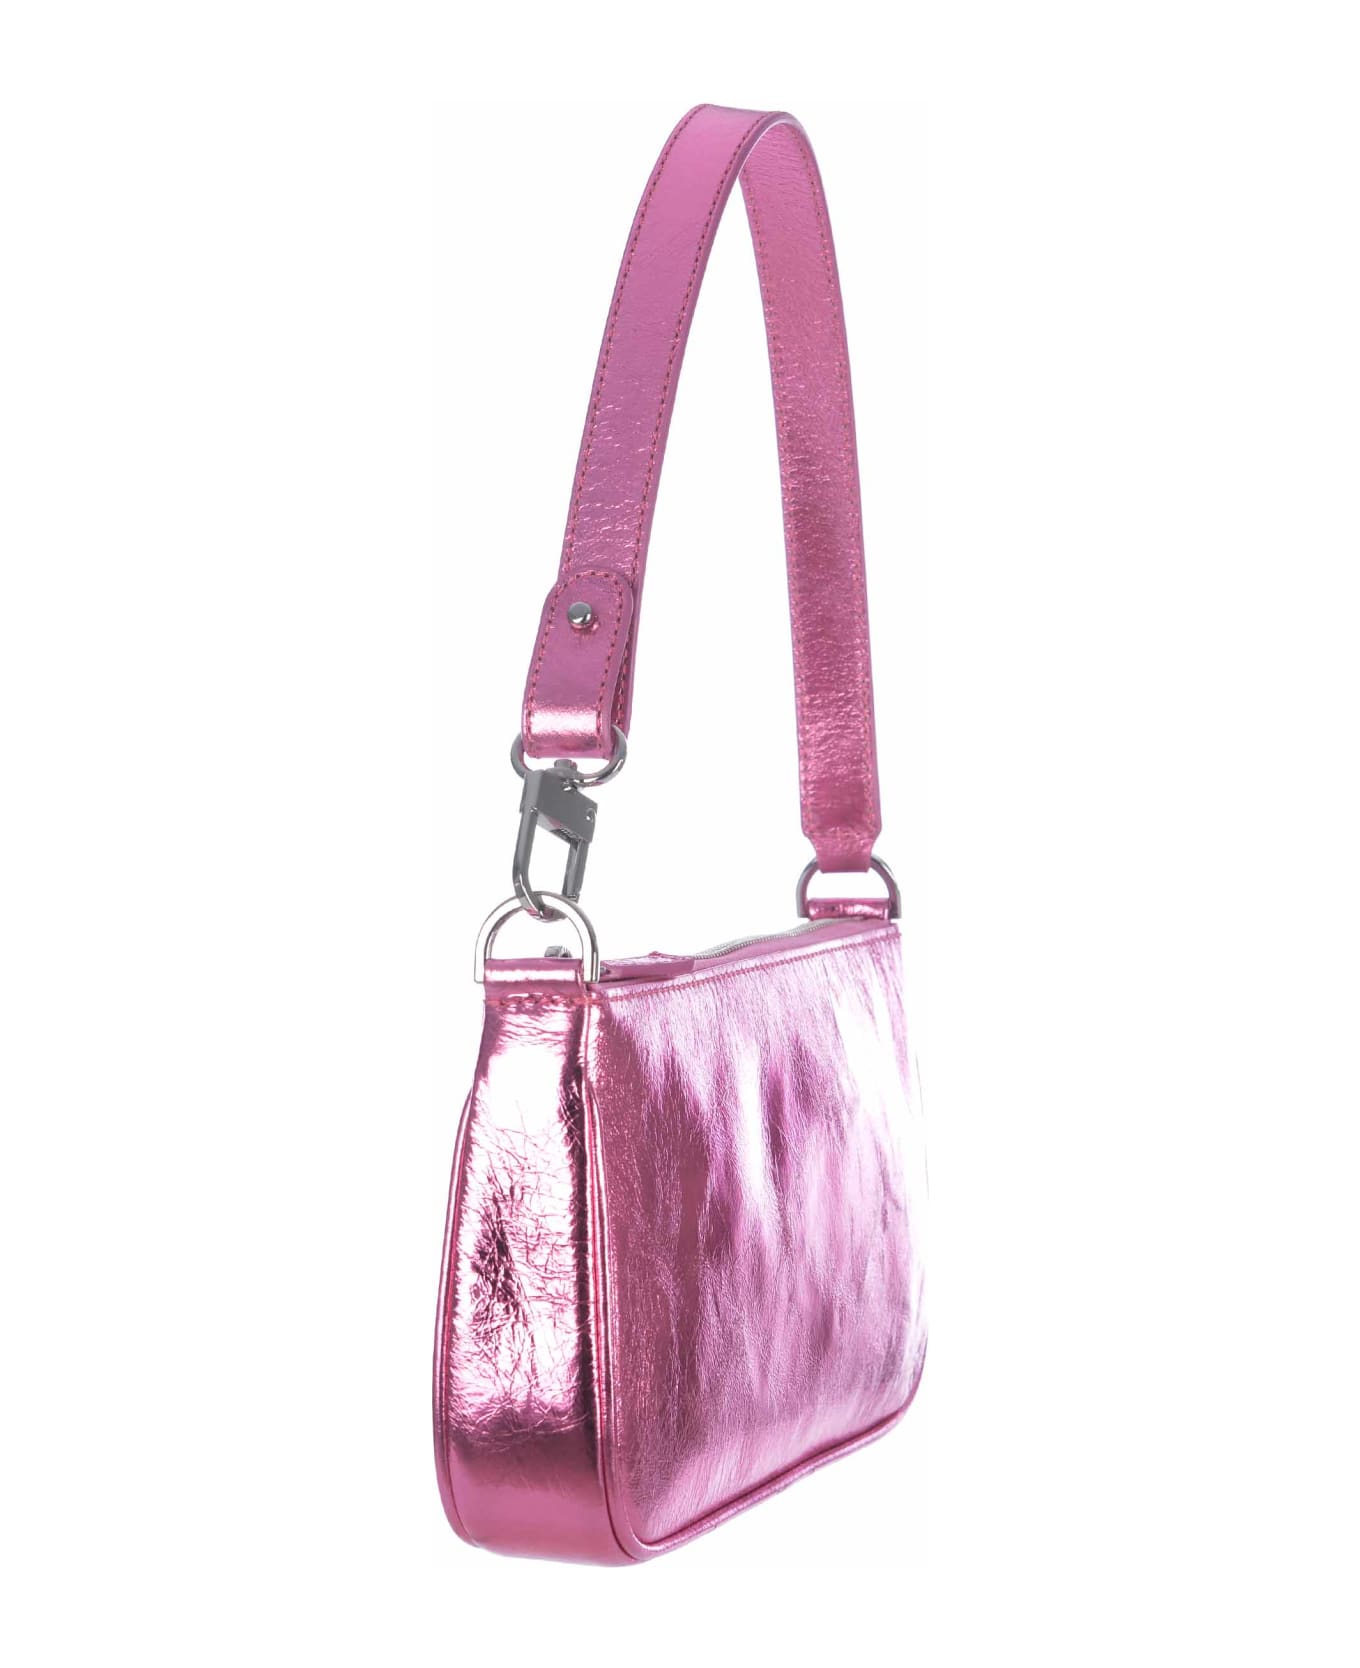 BY FAR Shoulder Bag By Far "rachel Medium" In Metallic Leather - Rosa バッグ